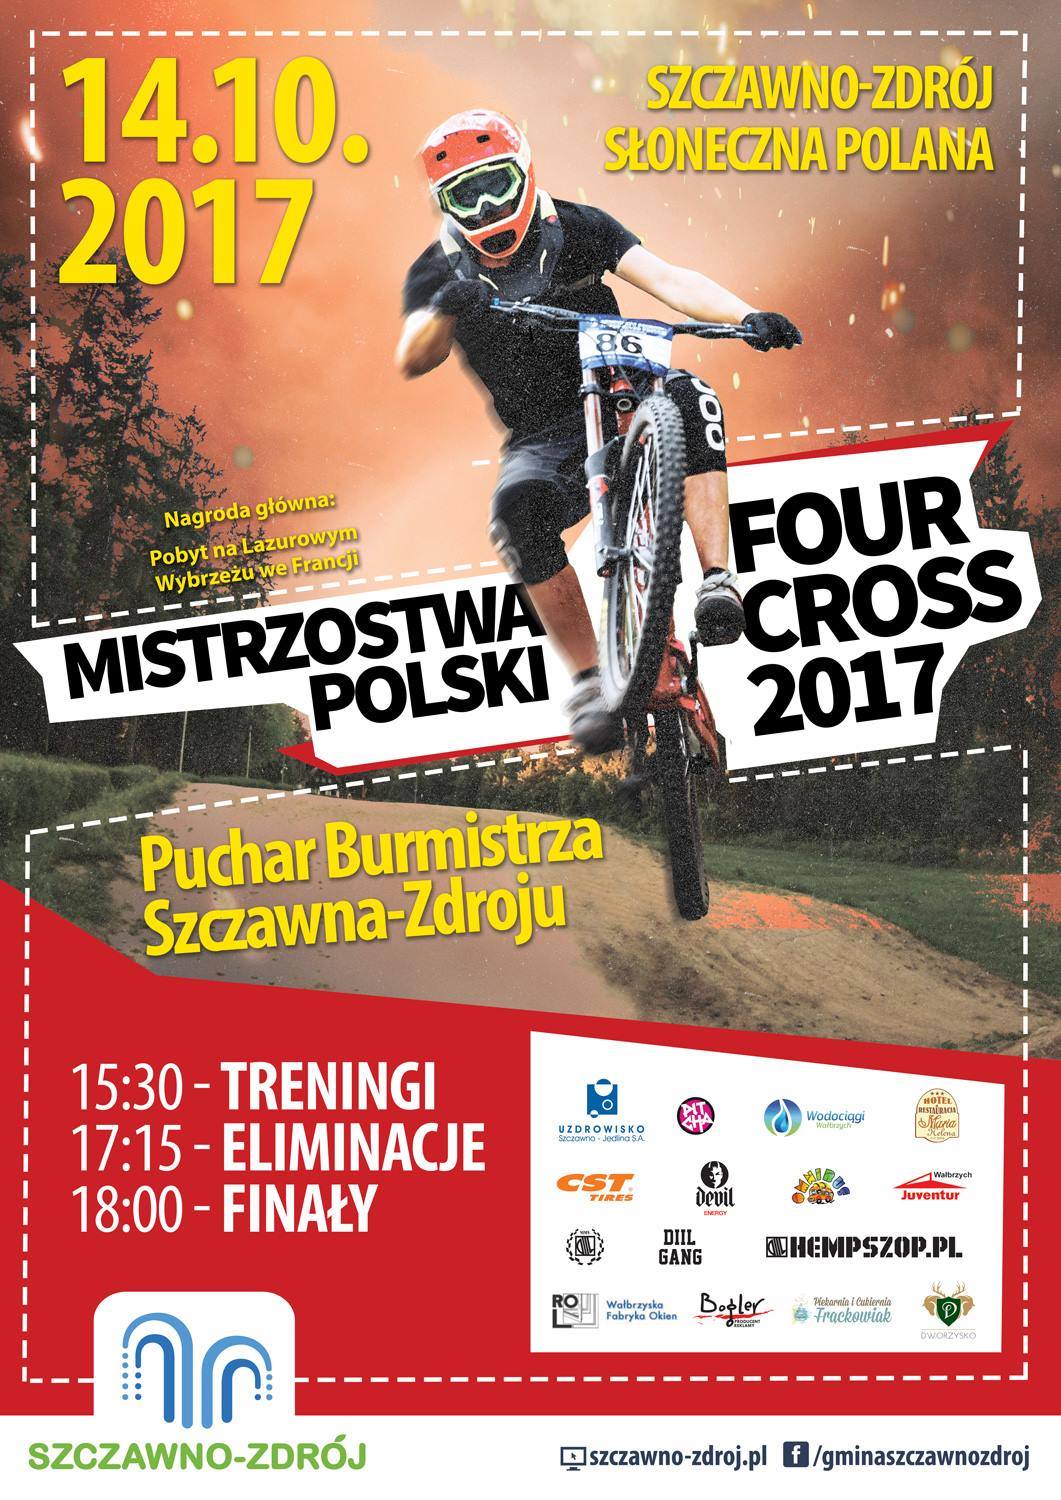 Zapraszamy na Mistrzostwa Polski 4X do Szczawna Zdroju!